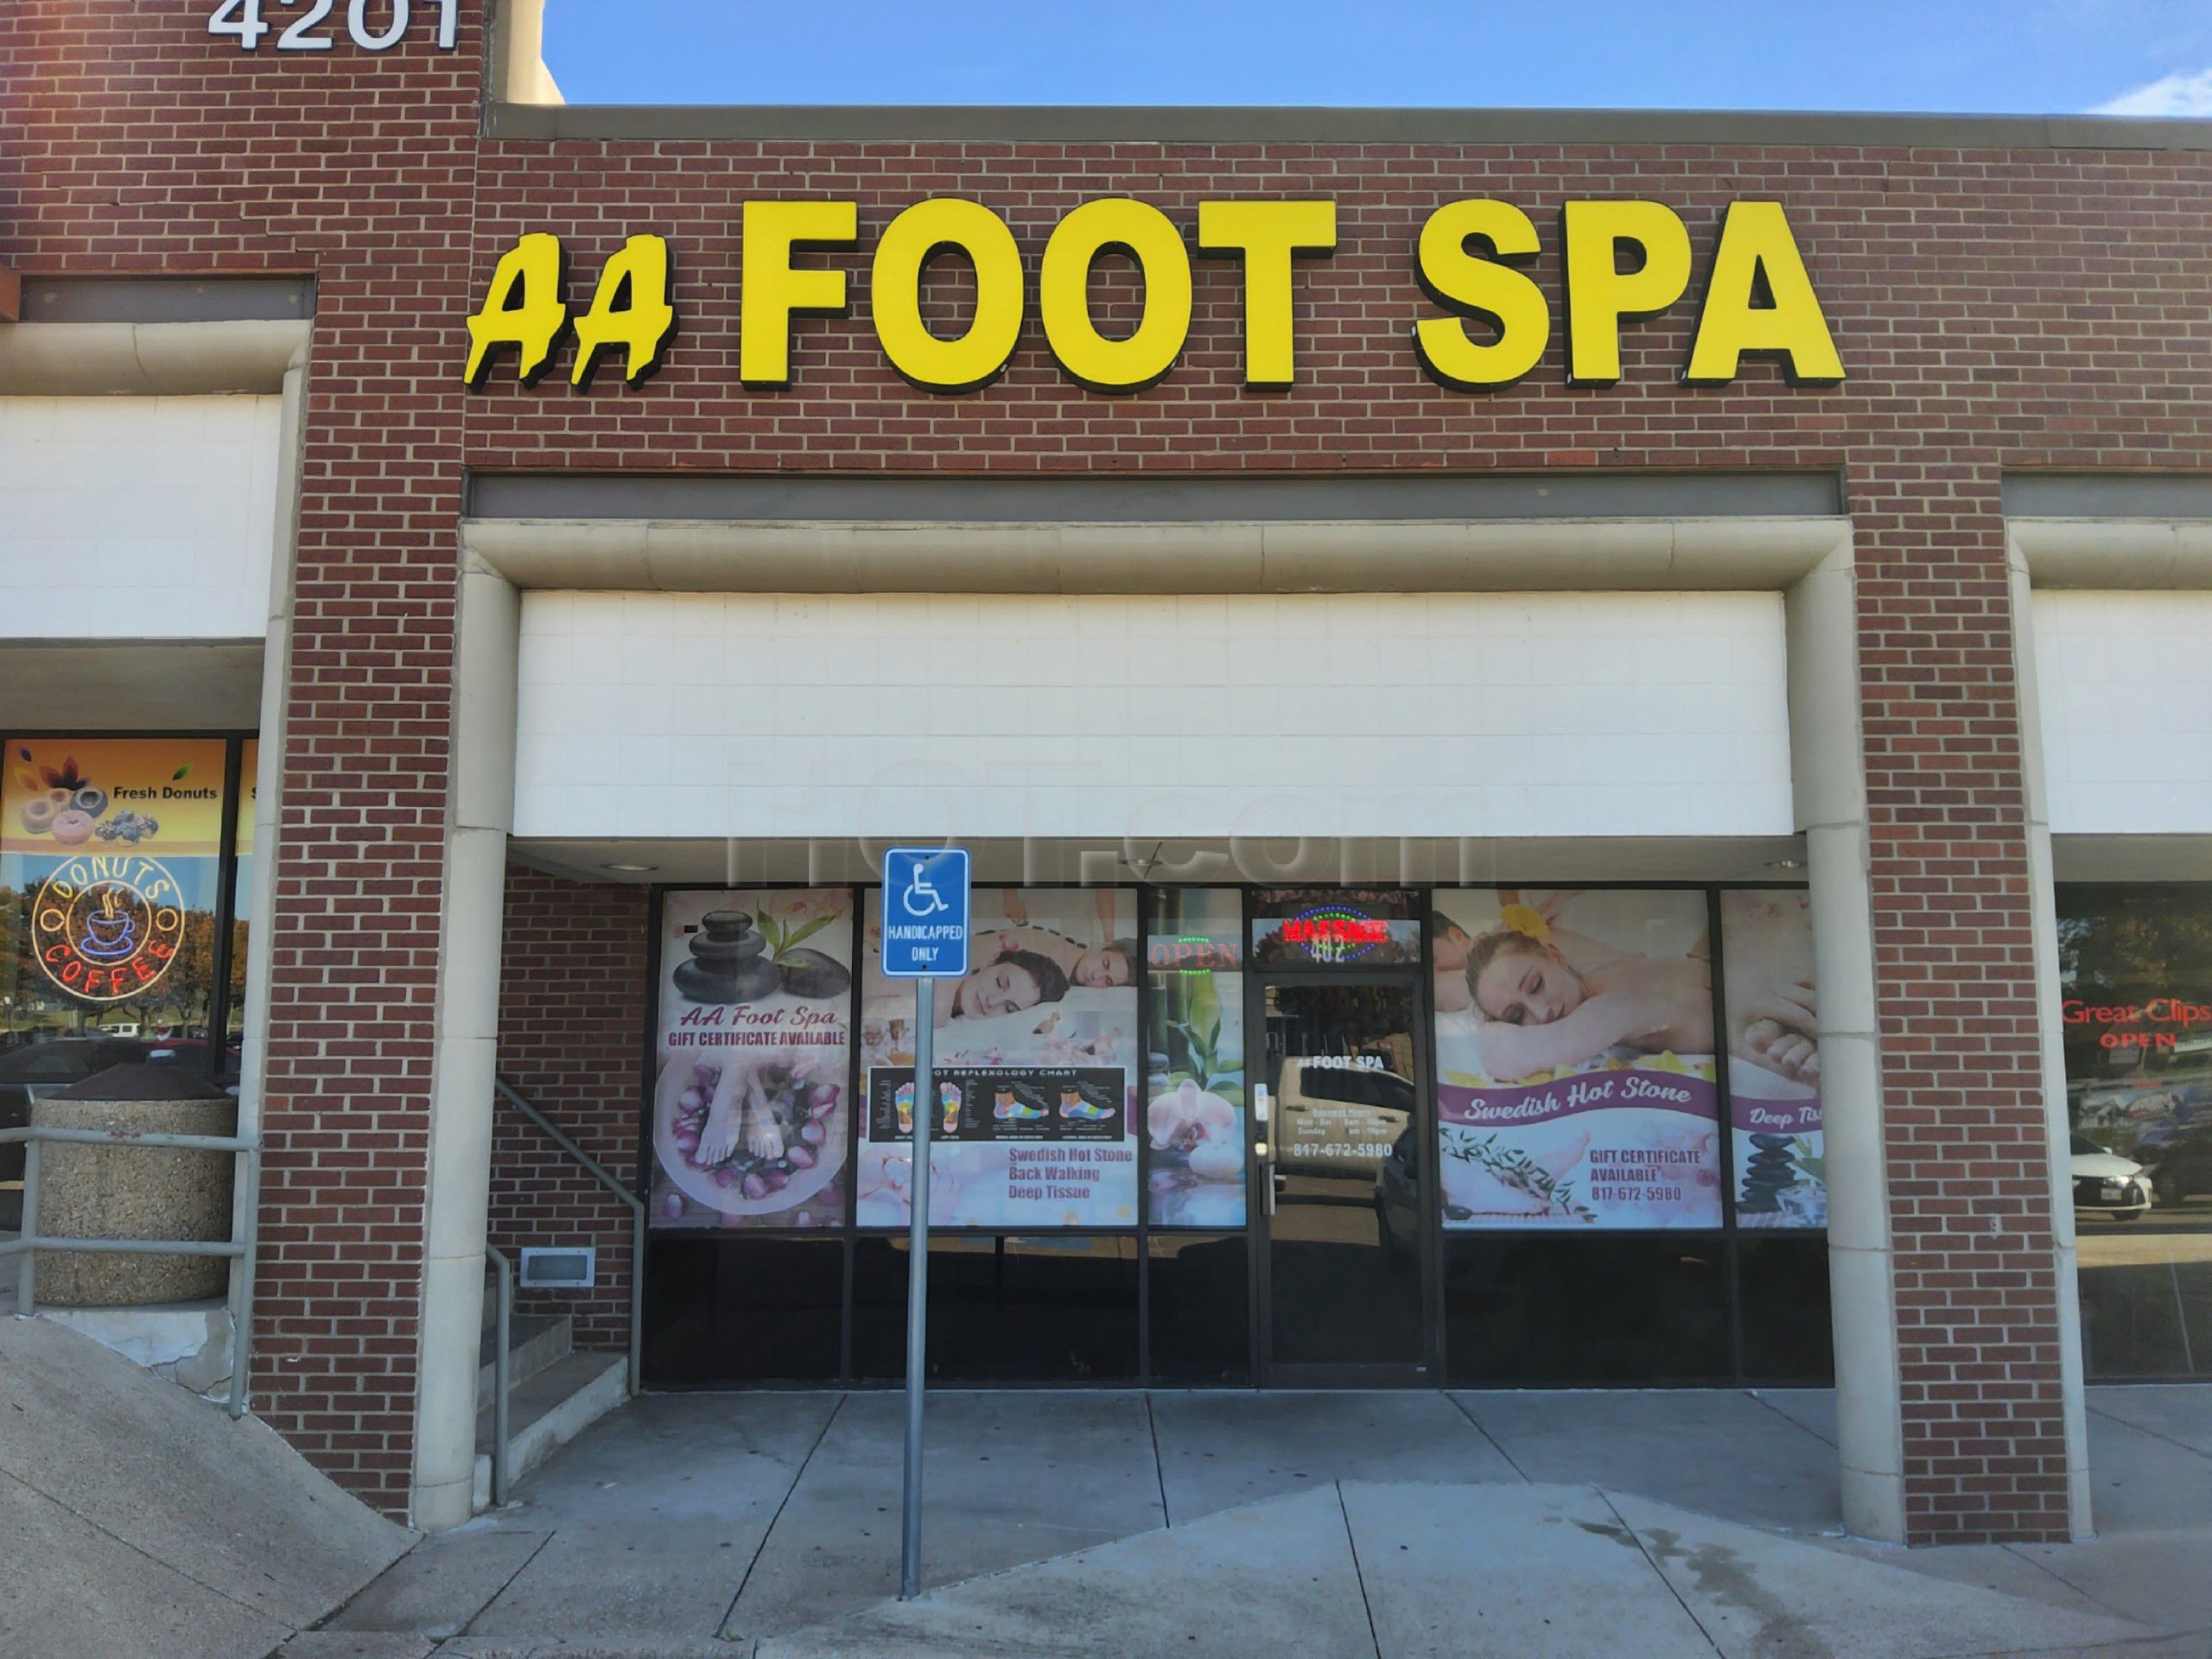 Arlington, Texas Aa Foot Spa